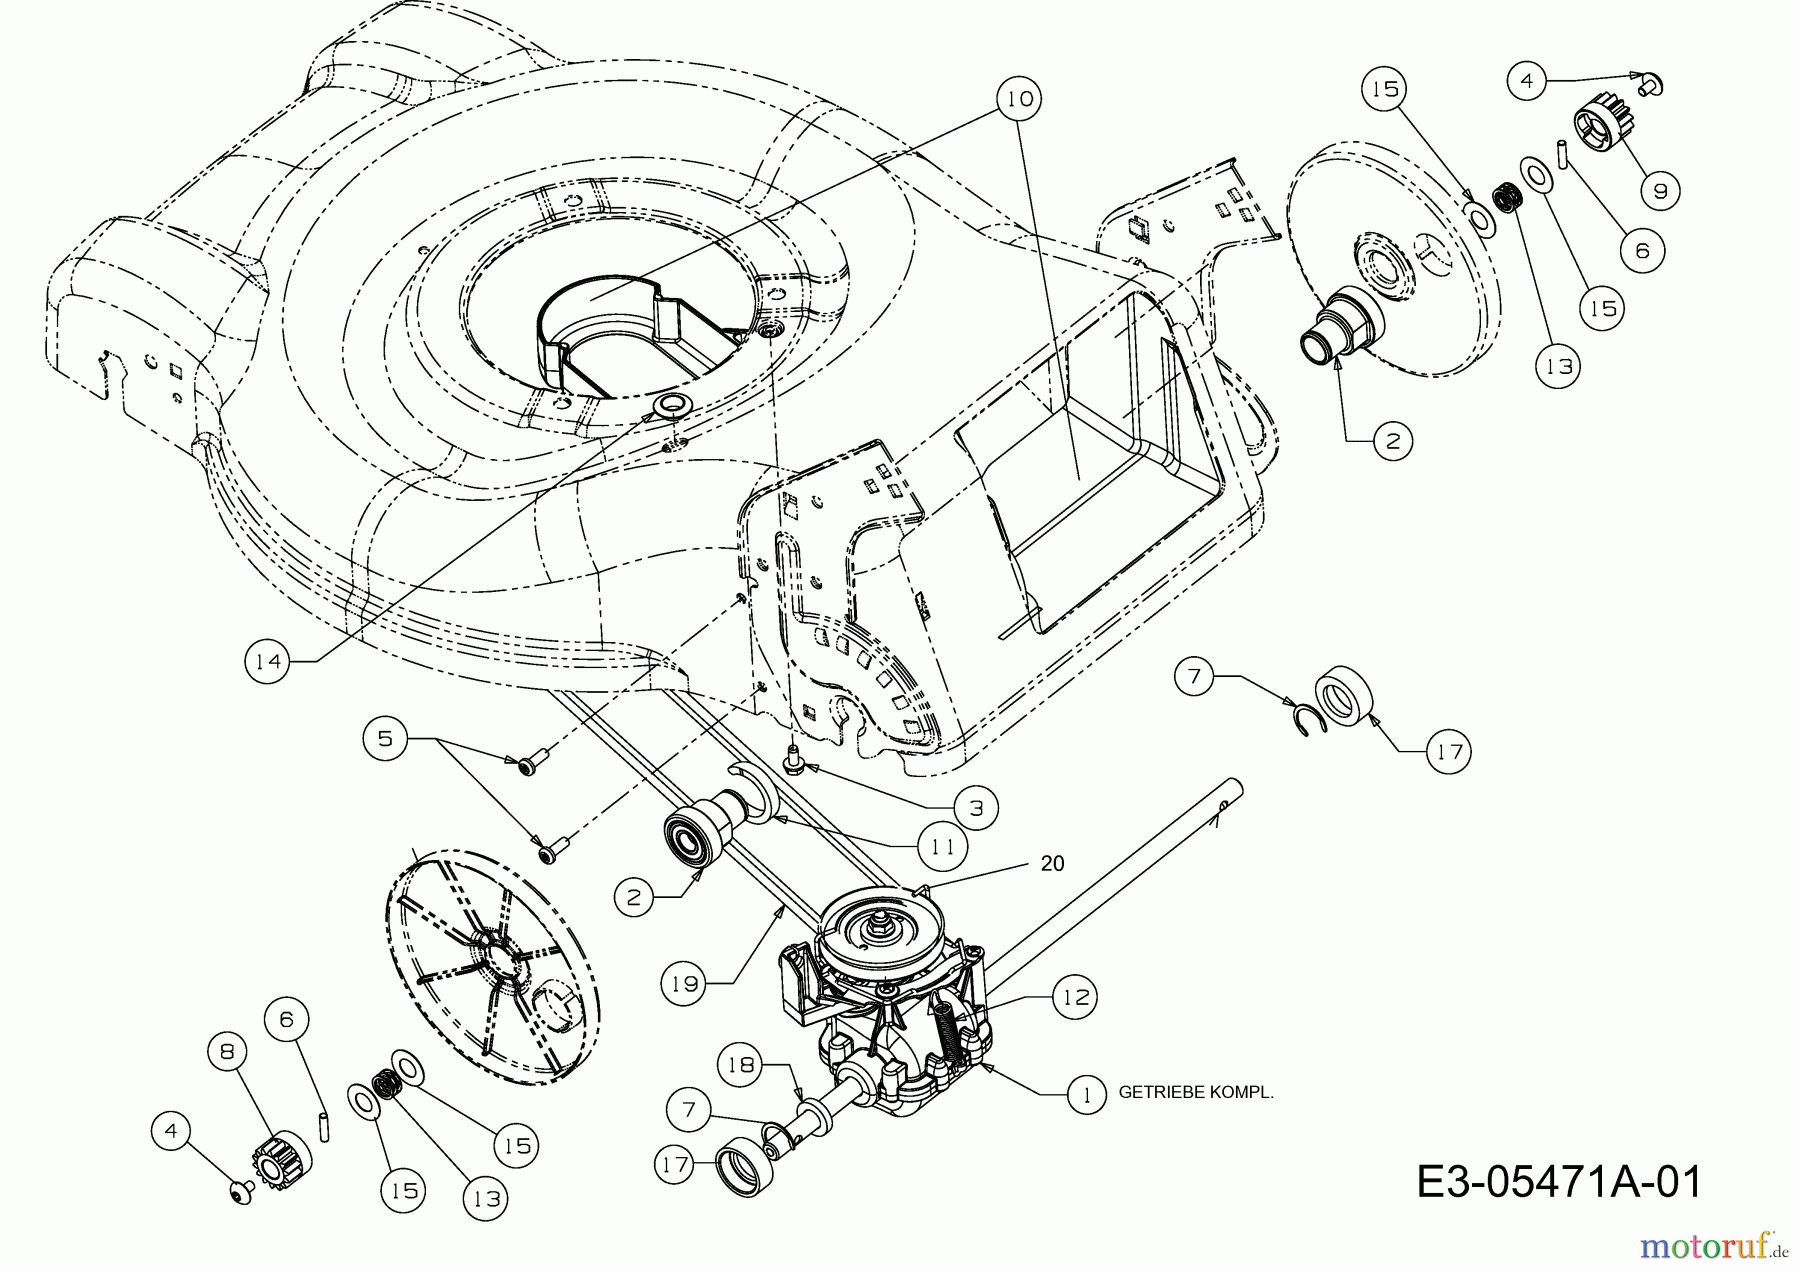  MTD Motormäher mit Antrieb GL 46 SPO 12D-J5M2676  (2010) Getriebe